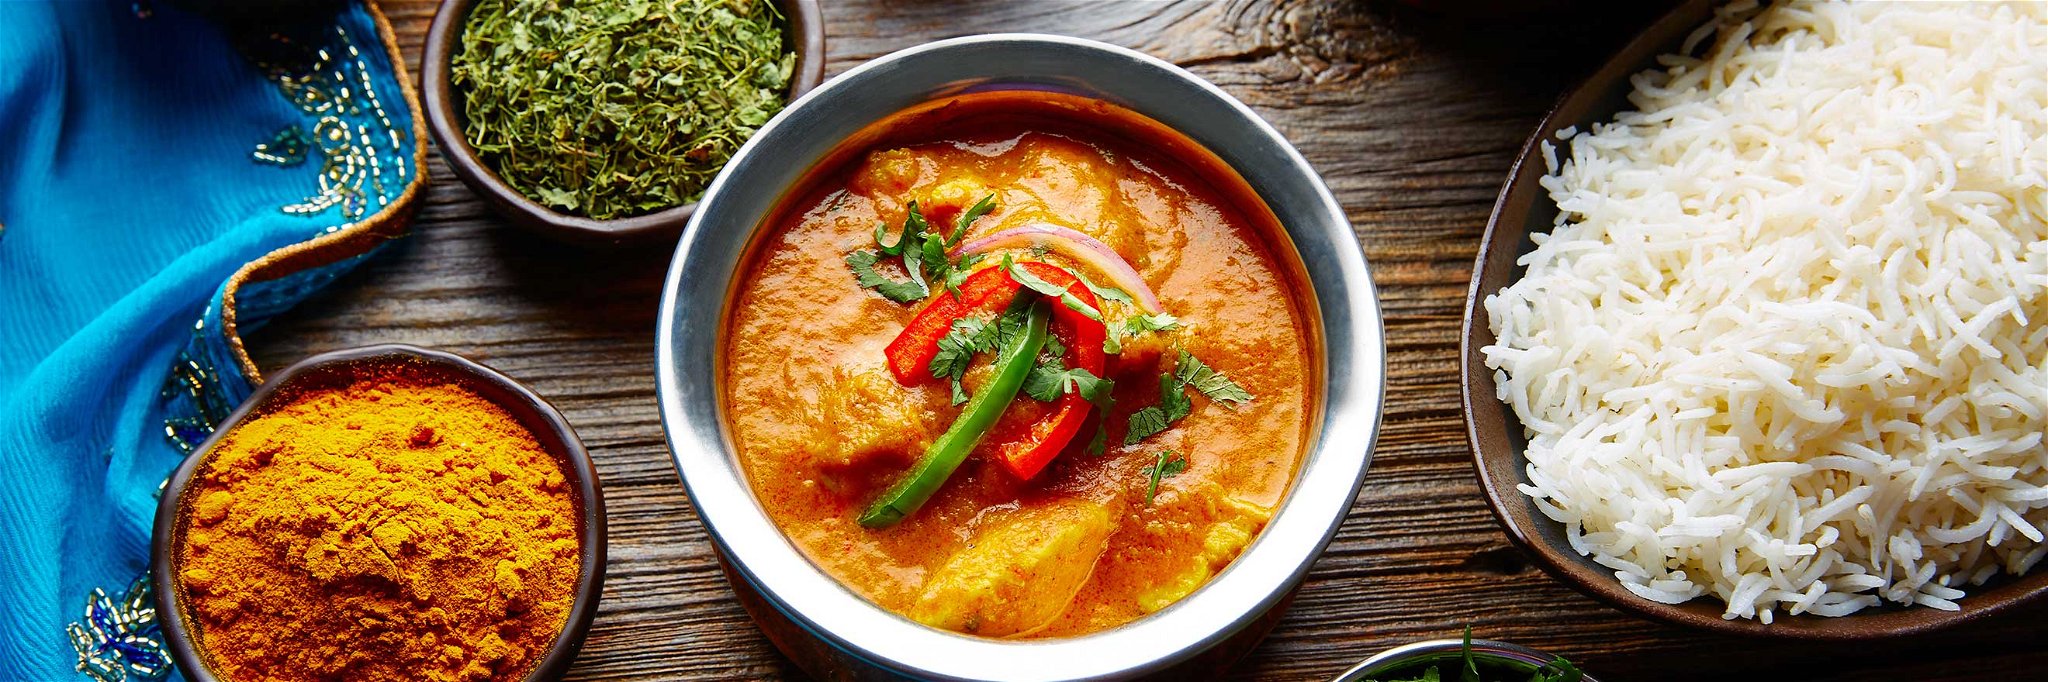 Farbenfroh, gerne auch scharf und gesund: die indische Küche.